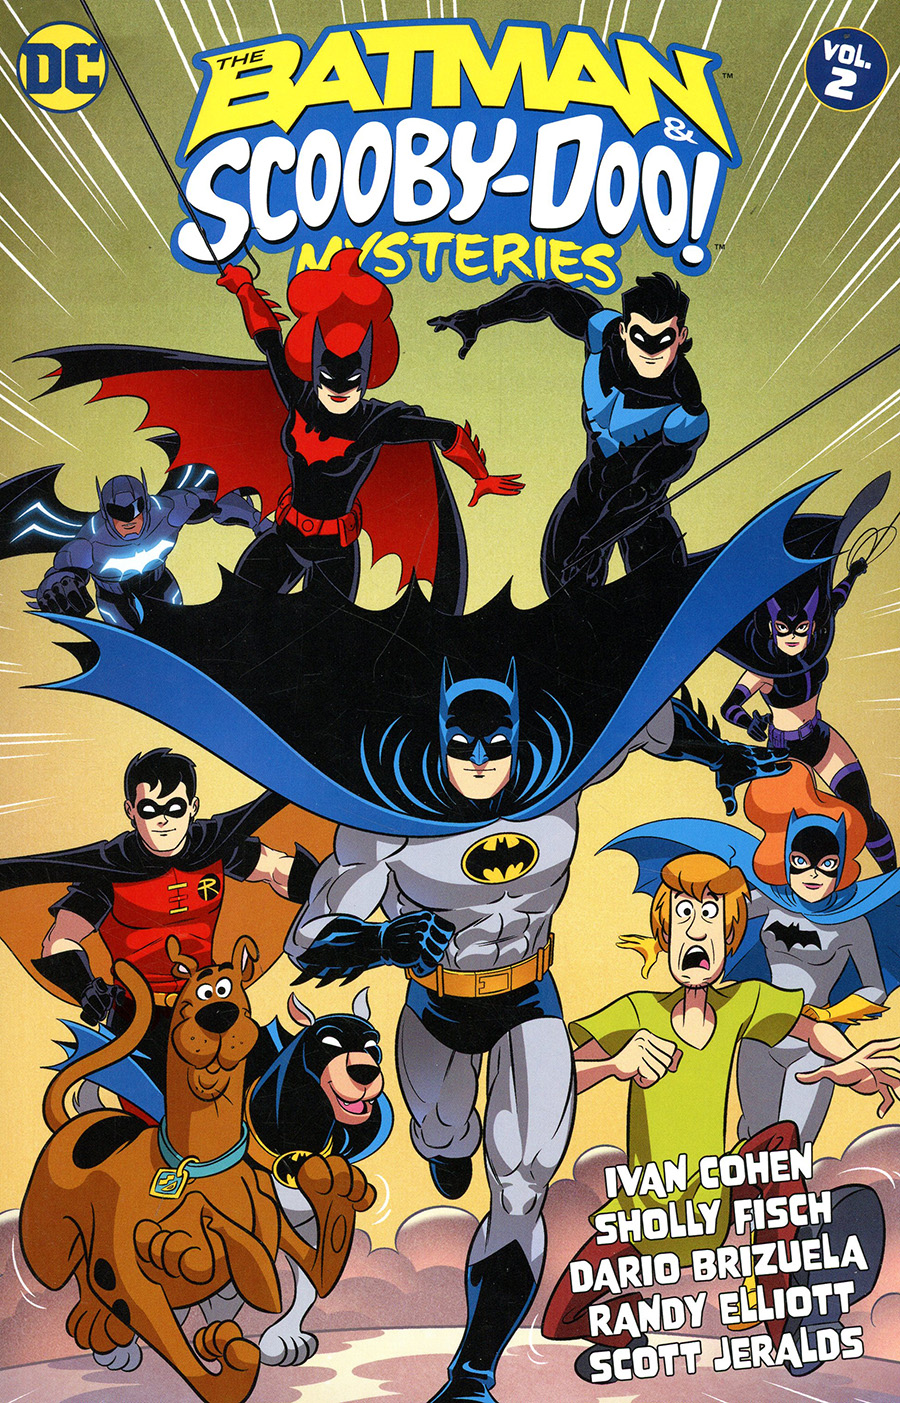 Batman & Scooby-Doo Mysteries Vol 2 TP